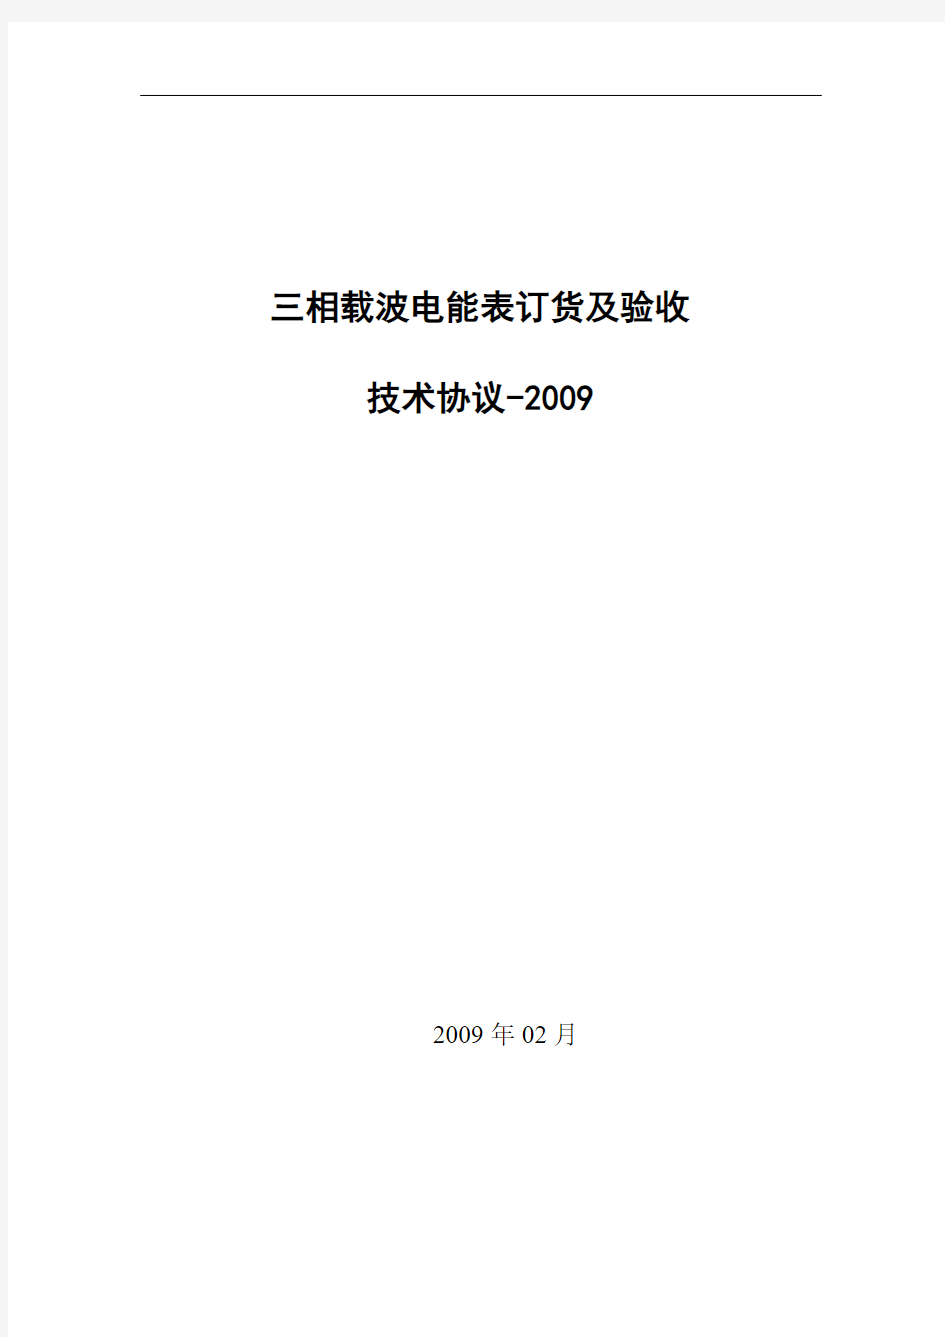 营销〔2009〕13号(附件)-三相载波电能表订货及验收技术条件-2009